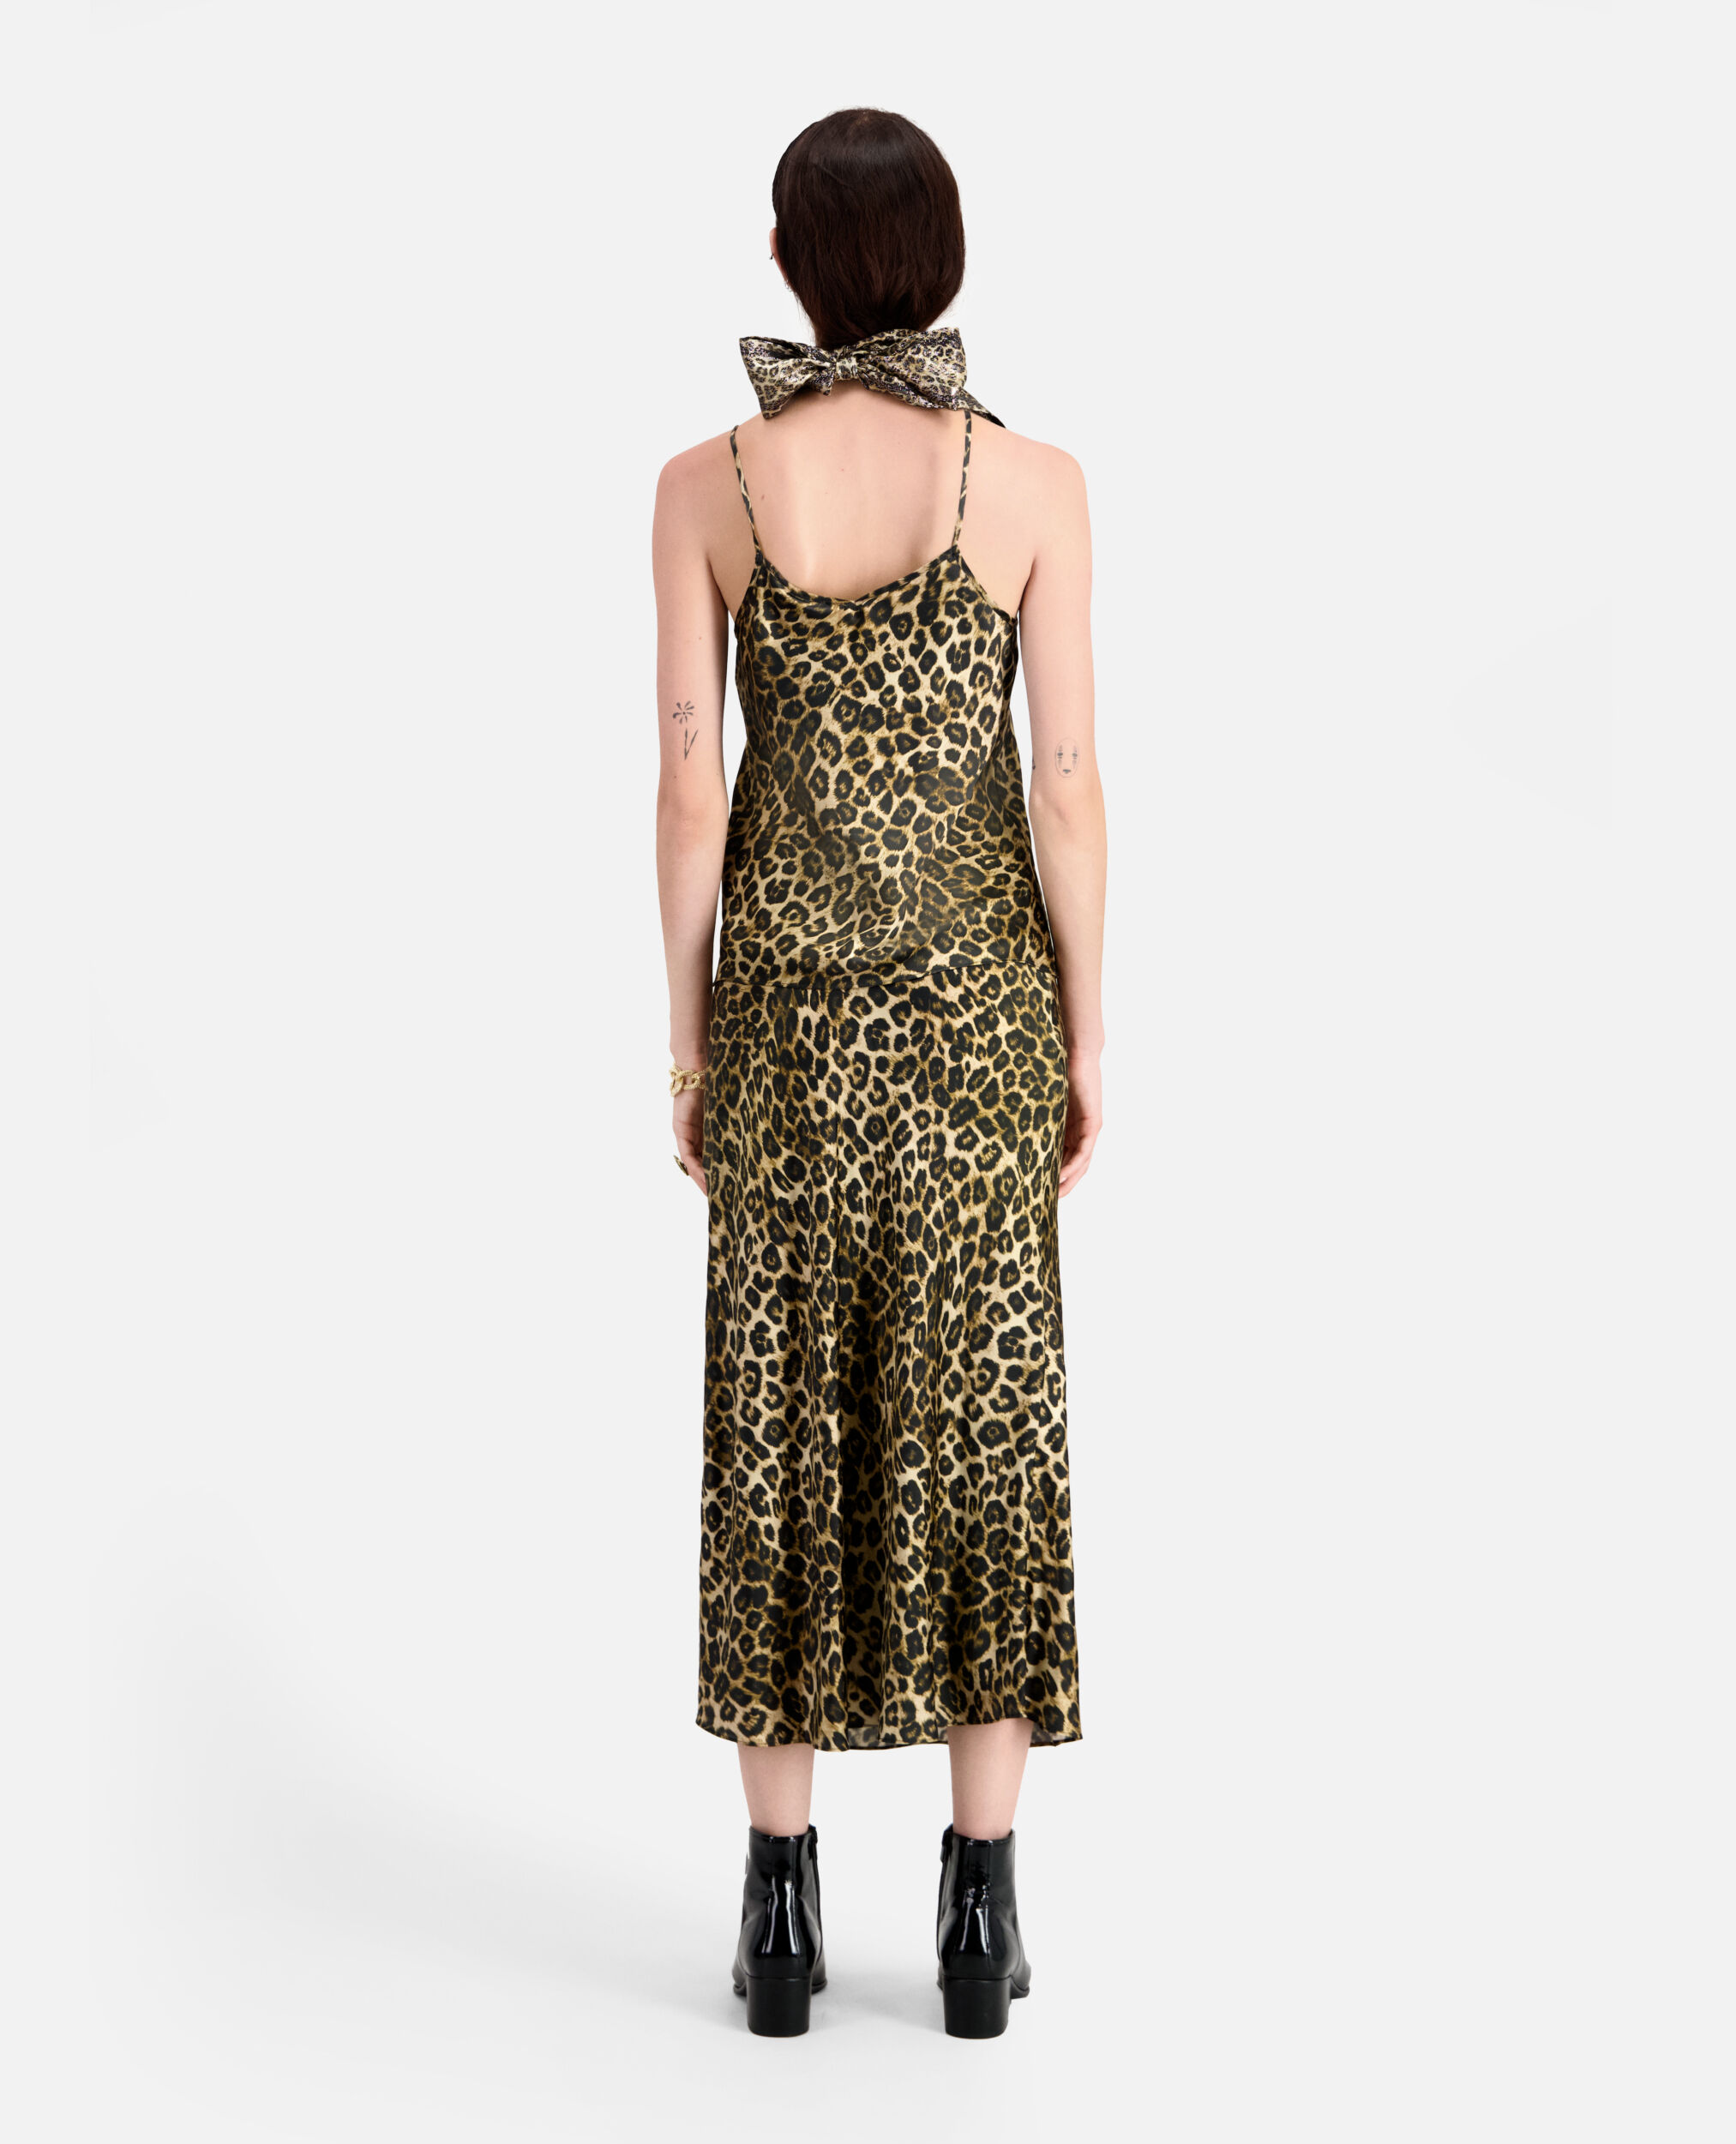 Camiseta interior de seda leopardo, LEOPARD, hi-res image number null